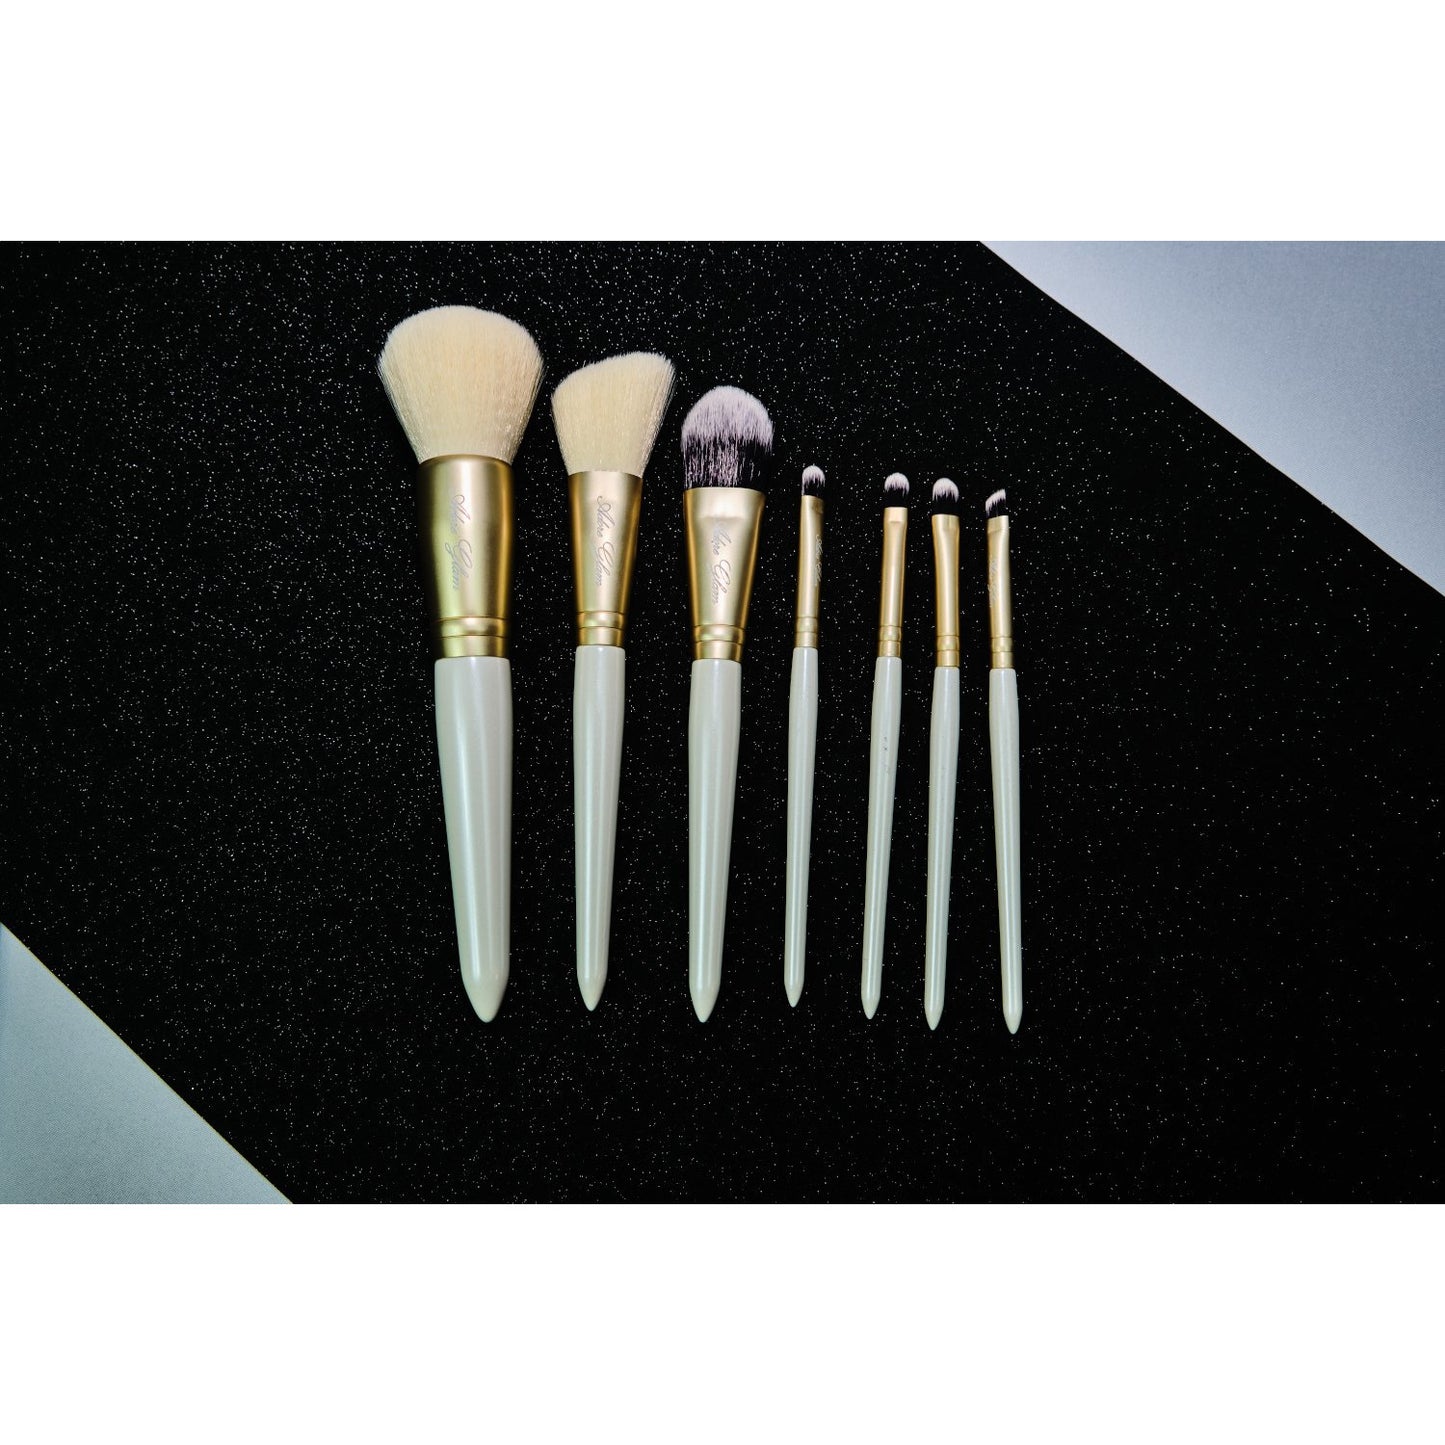 Luxe Life 7-Pc Makeup Brush Set